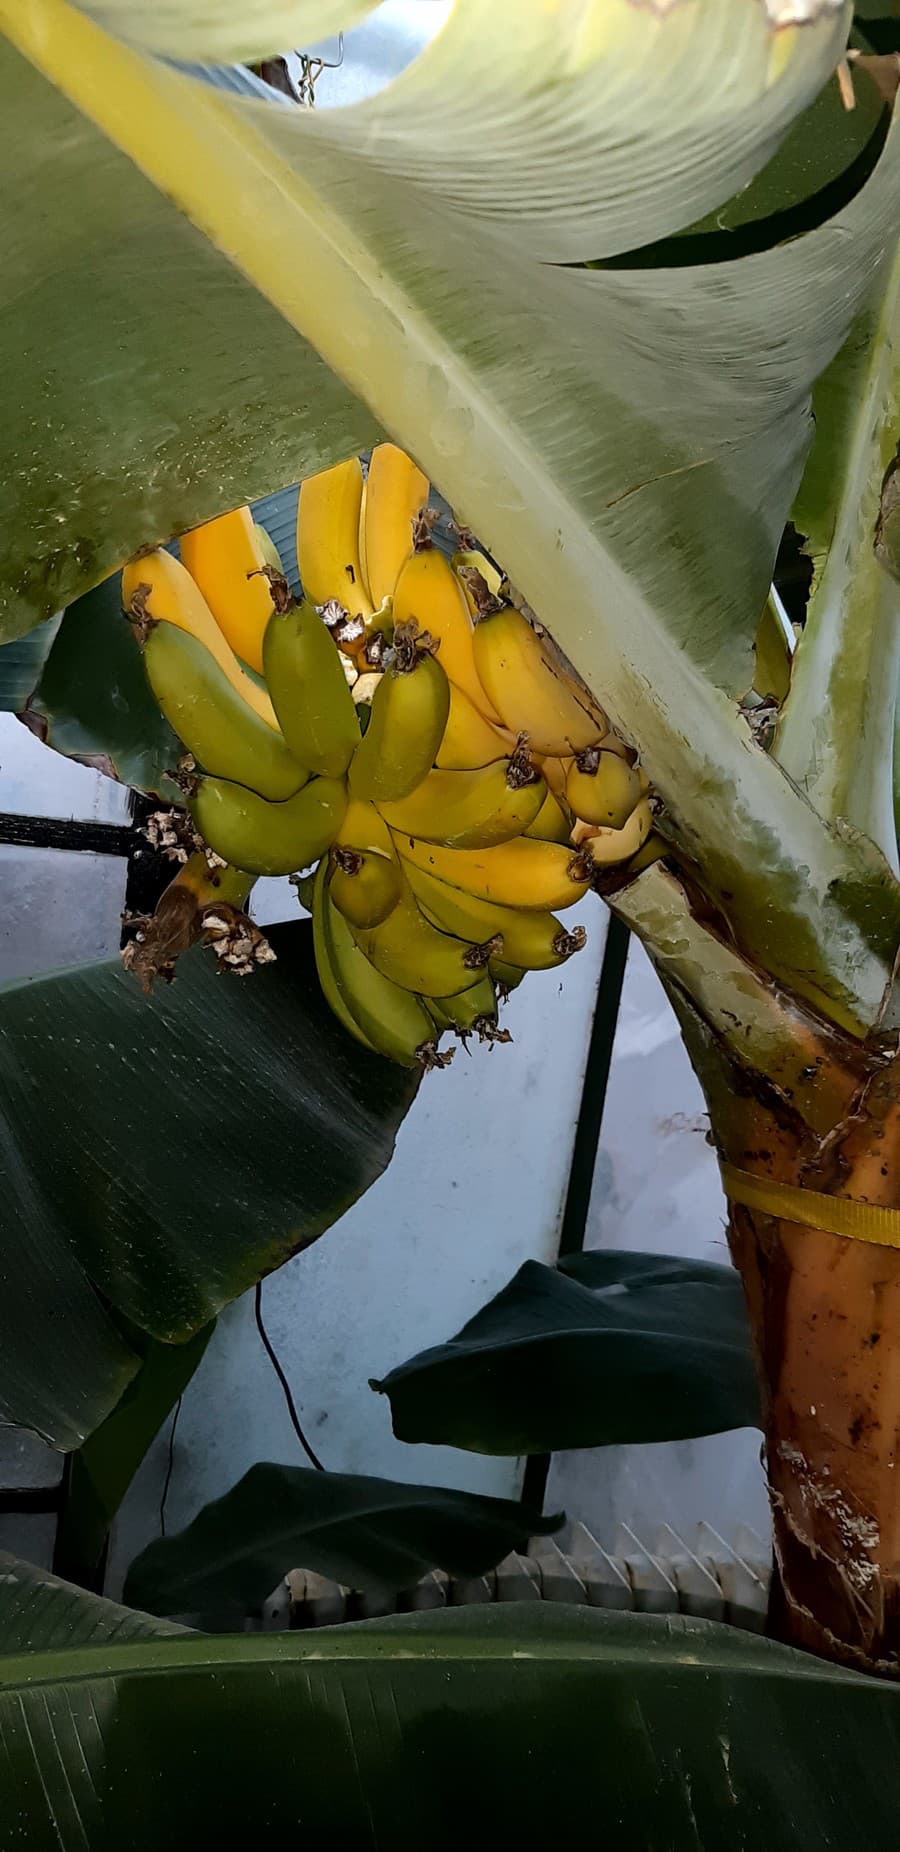 Dozreté banány sú veľmi